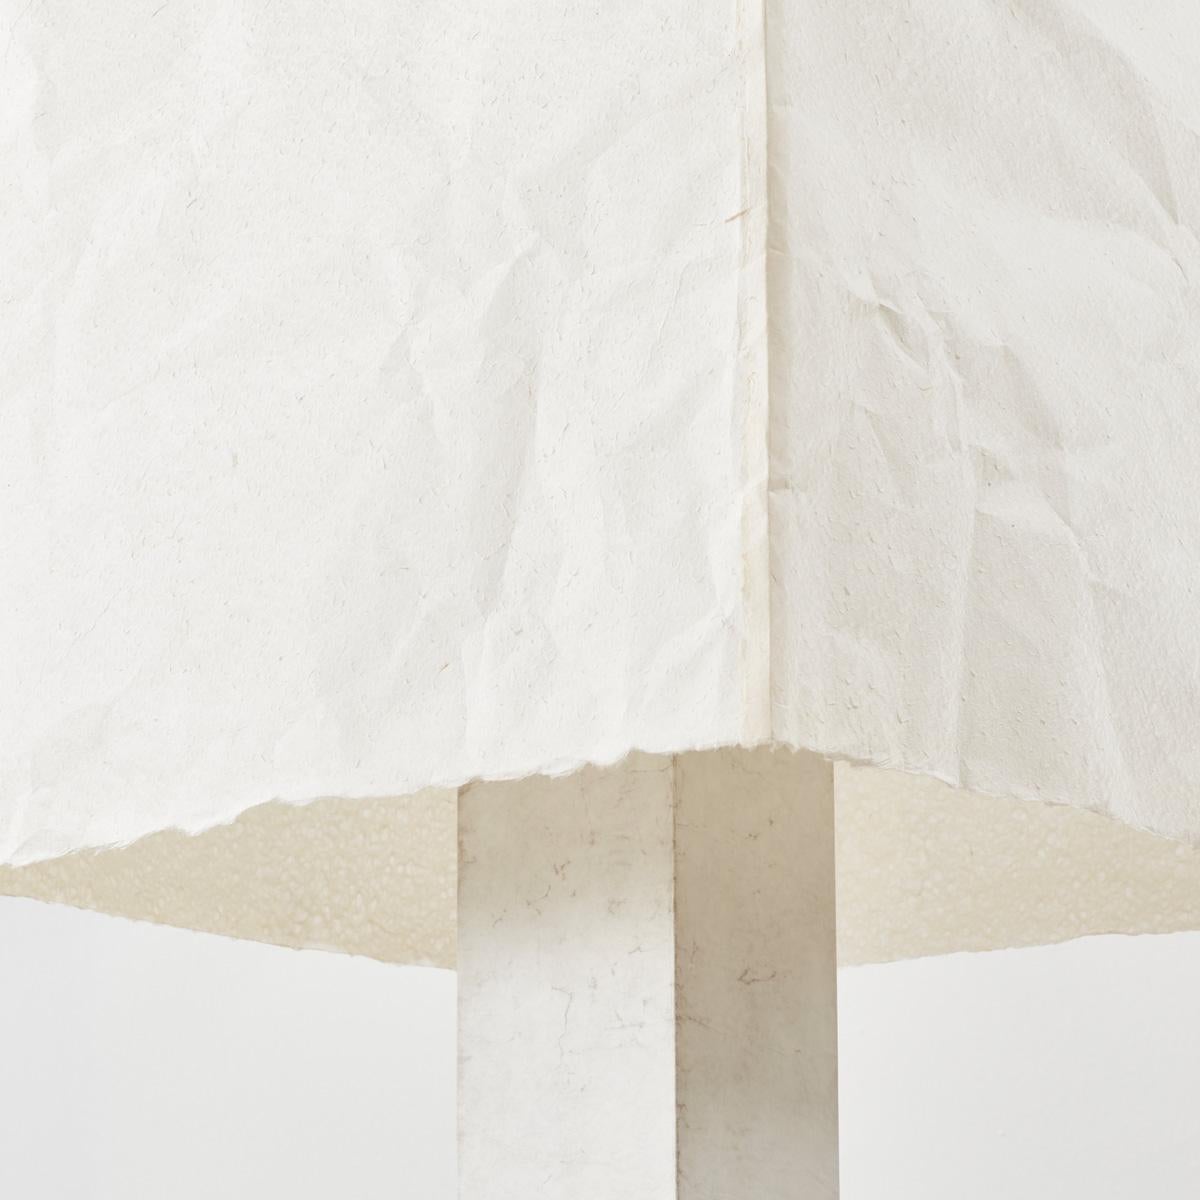 David Horan Paper floor light in polished finish for Béton Brut, UK, 2022 For Sale 3